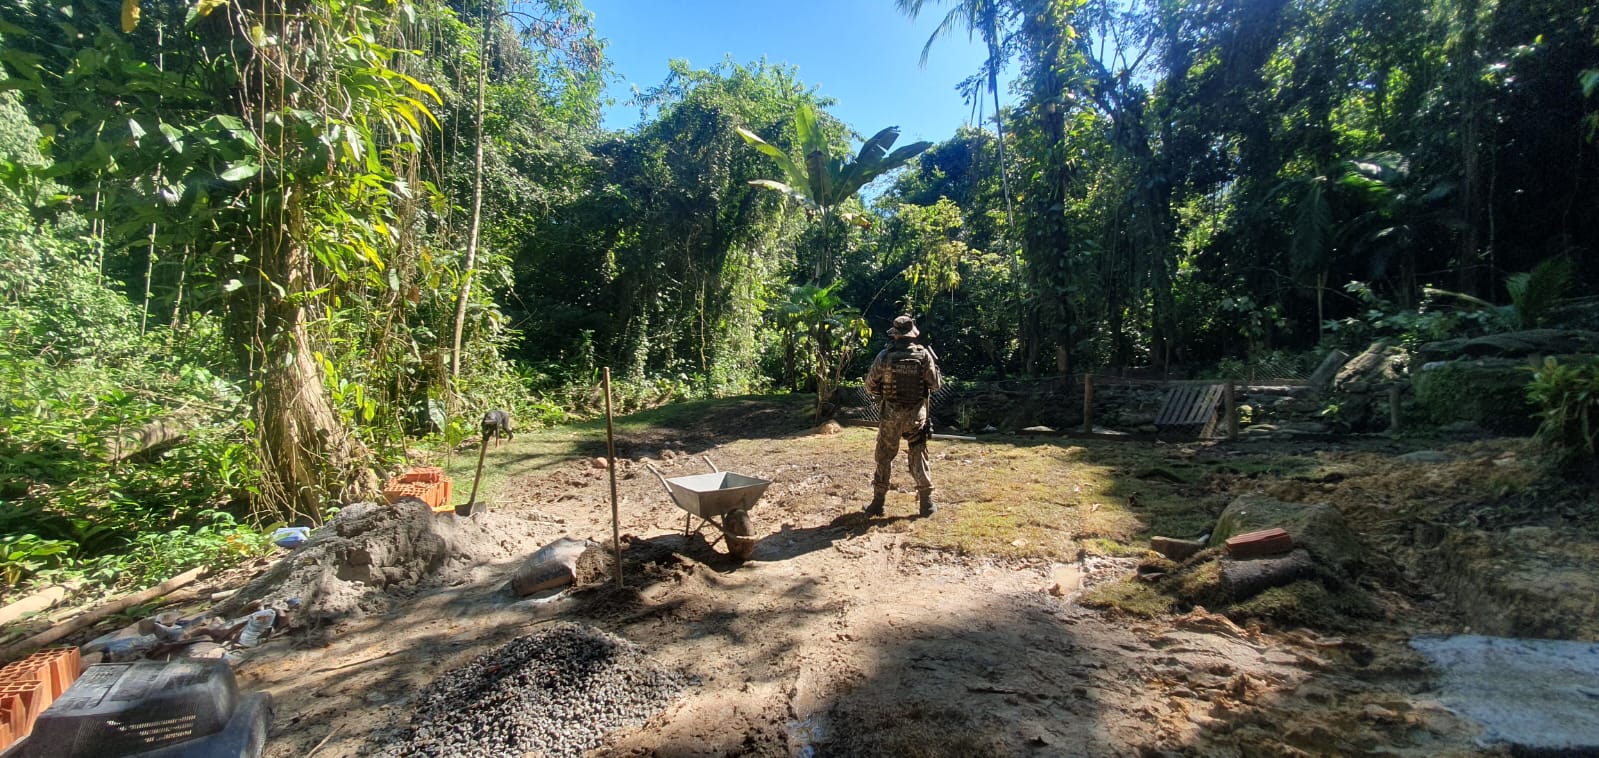 4ª UPAm encontra árvores cortadas e construção irregular em Angra dos Reis    